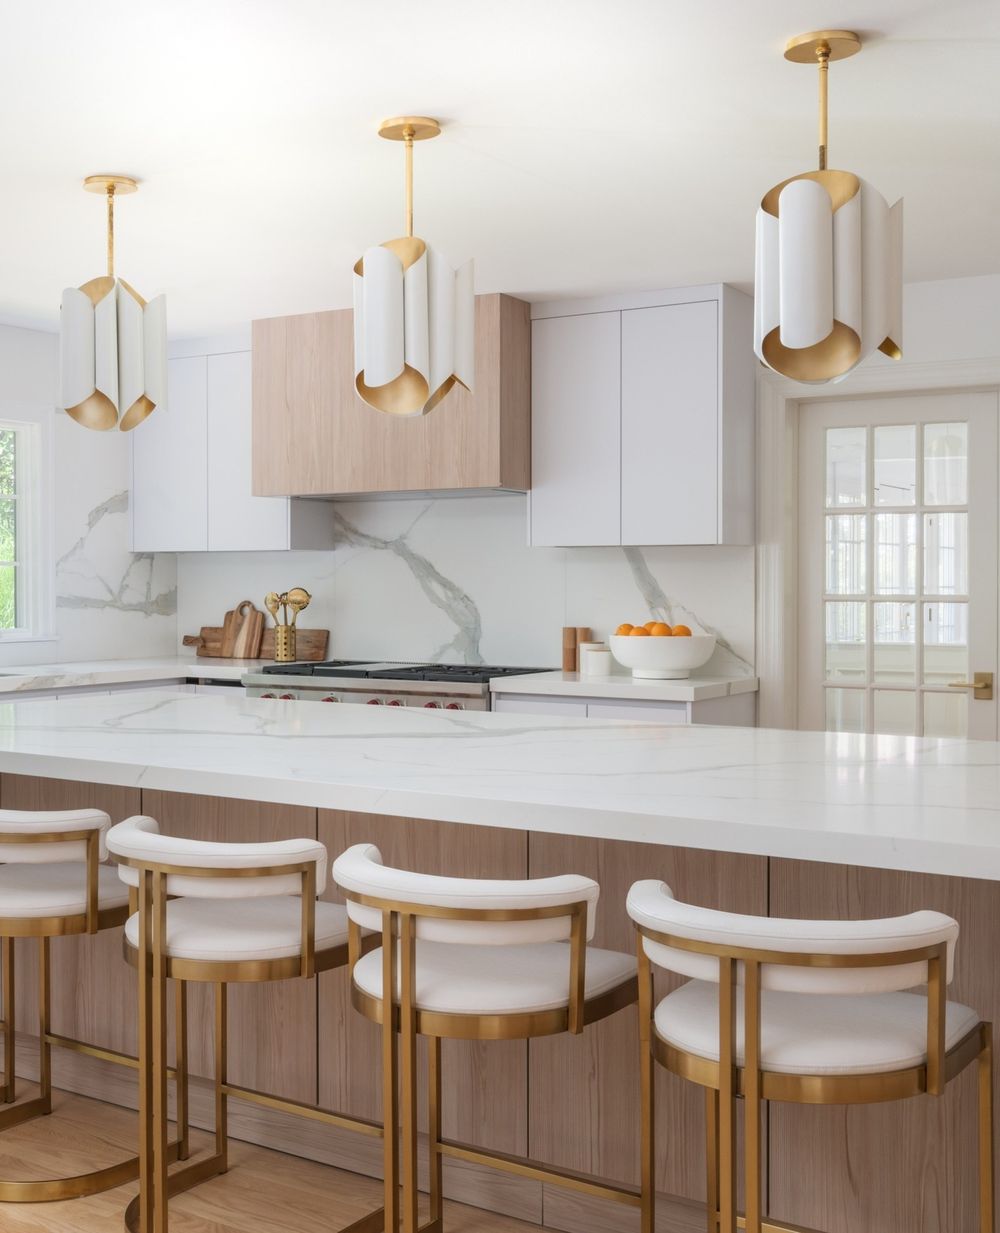 Elegant interior design modern kitchen @interiorsbyad